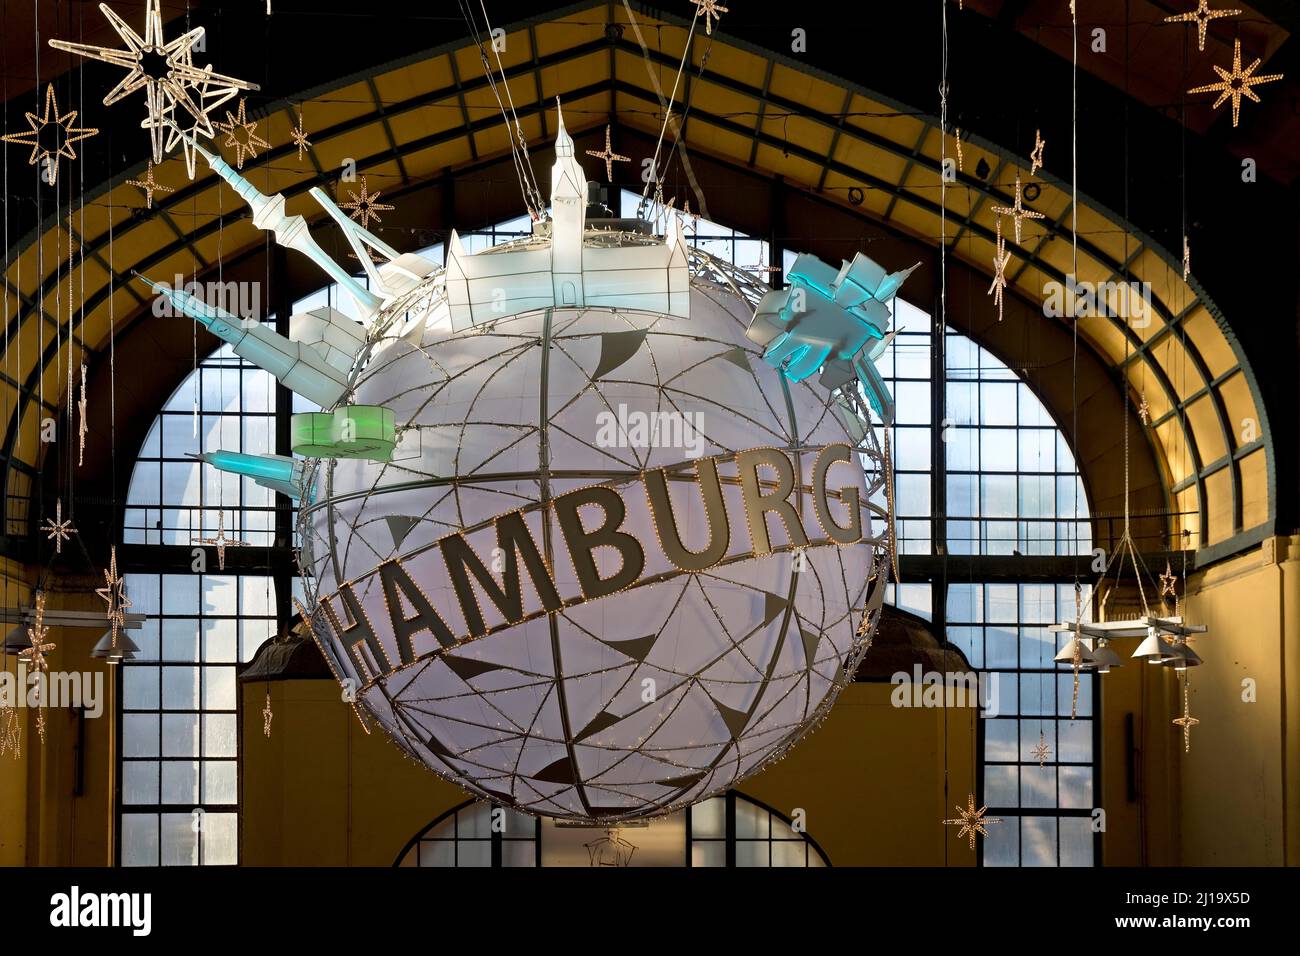 Hamburg Ballon mit Sehenswürdigkeiten am Hauptbahnhof, Hamburg, Deutschland  Stockfotografie - Alamy